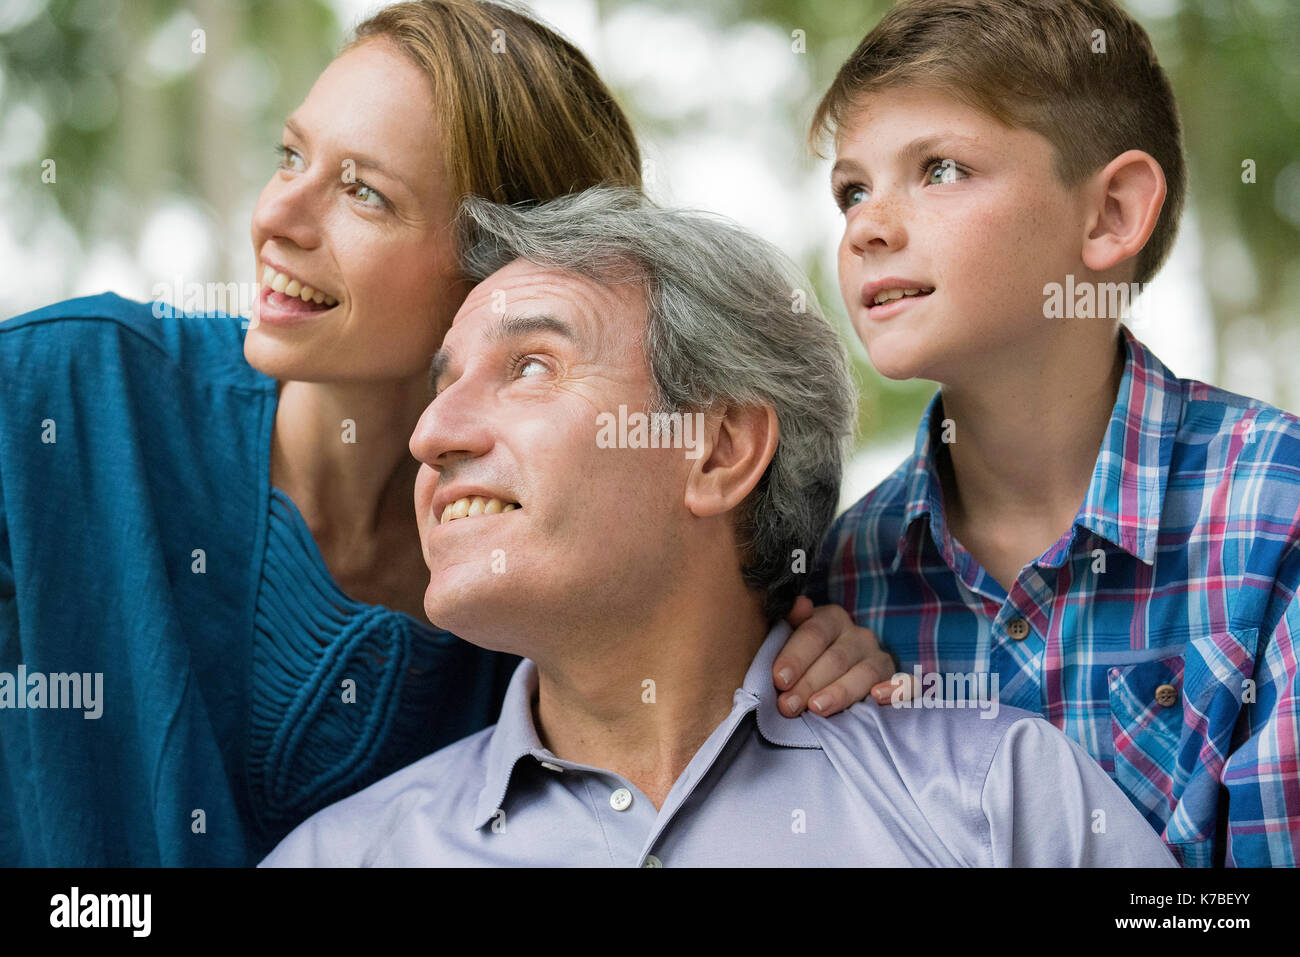 Family smiling together together, portrait Banque D'Images